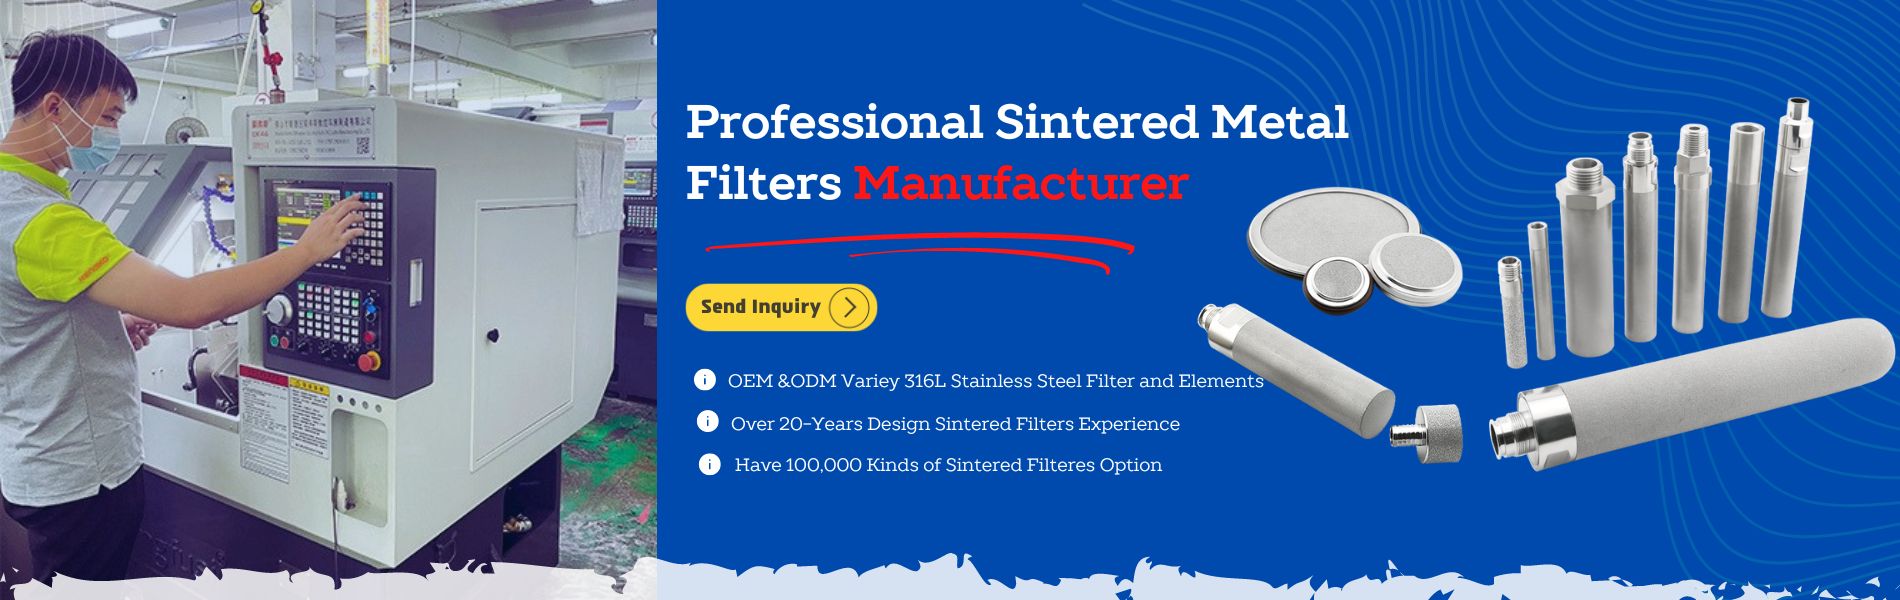 Fabricante profesional de filtros de metal sinterizado